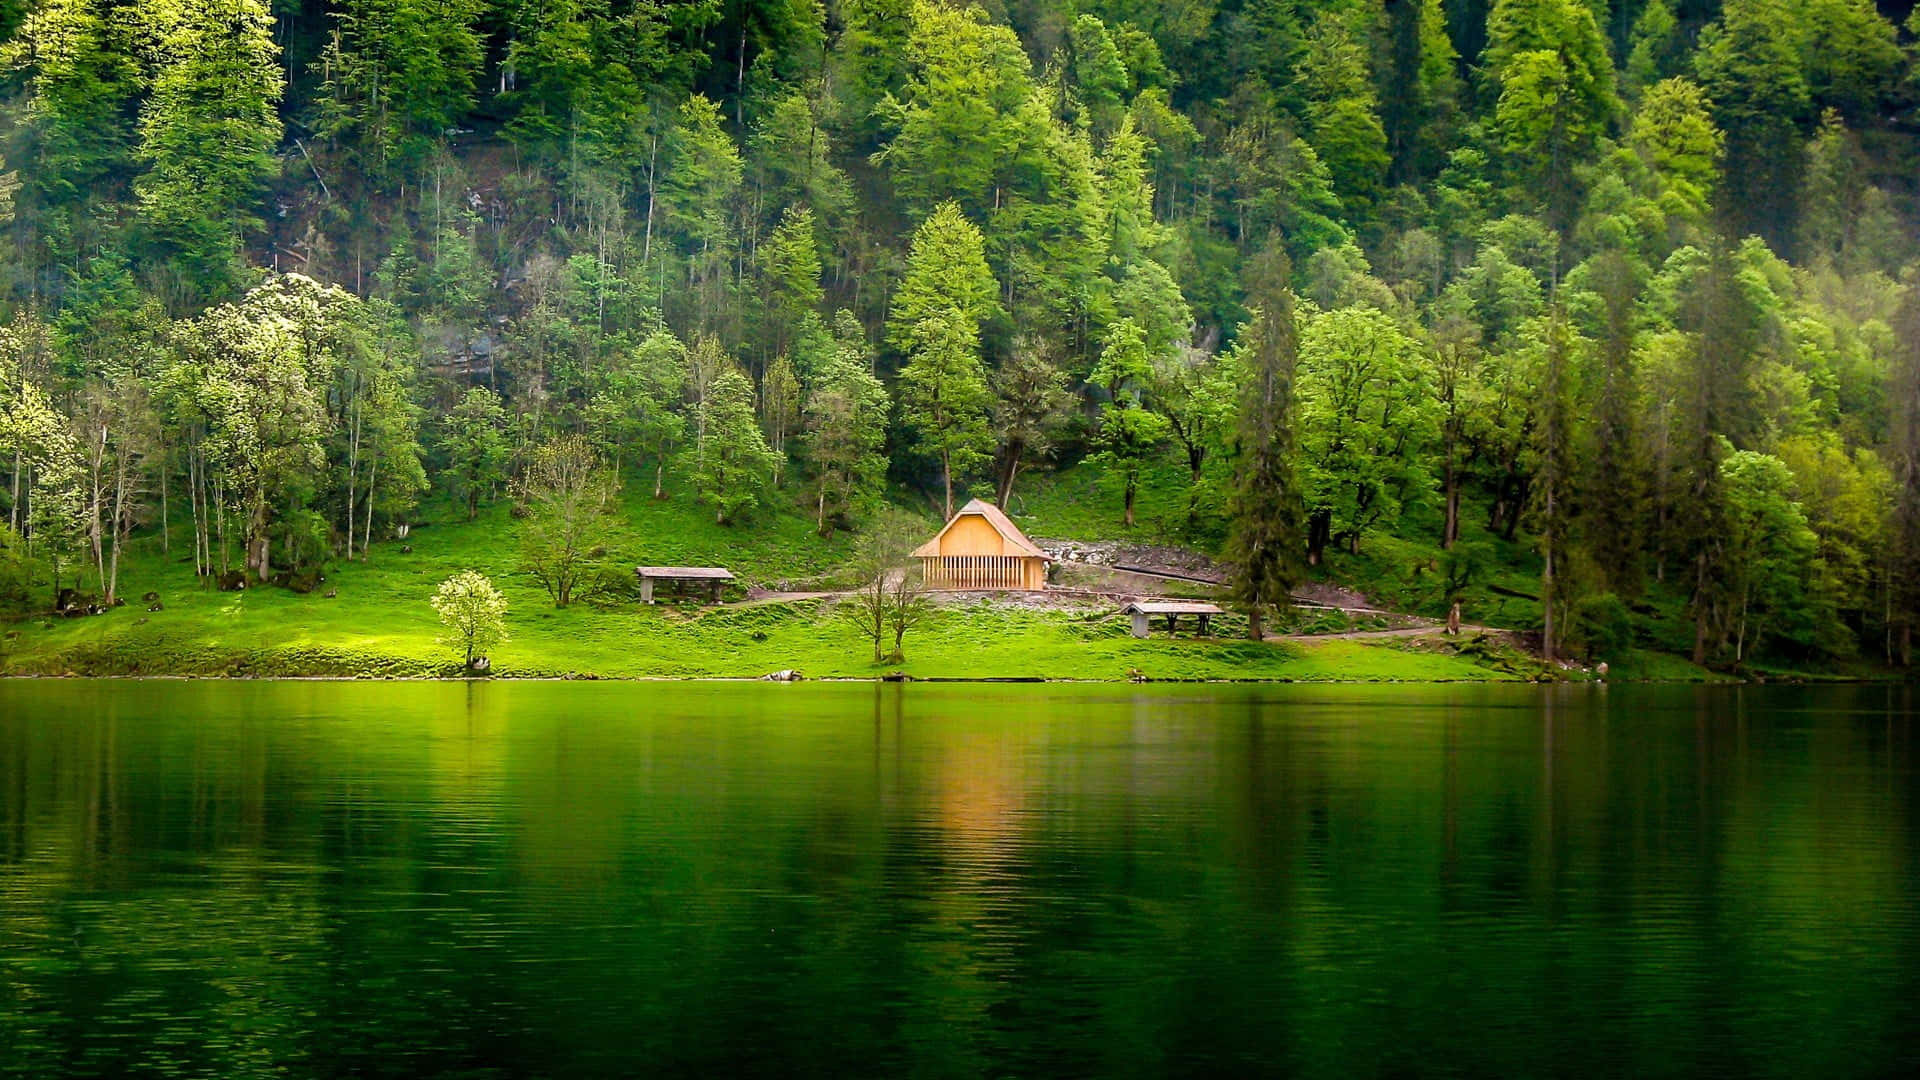 Umapequena Casa Em Um Lago Cercado Por Árvores Verdes